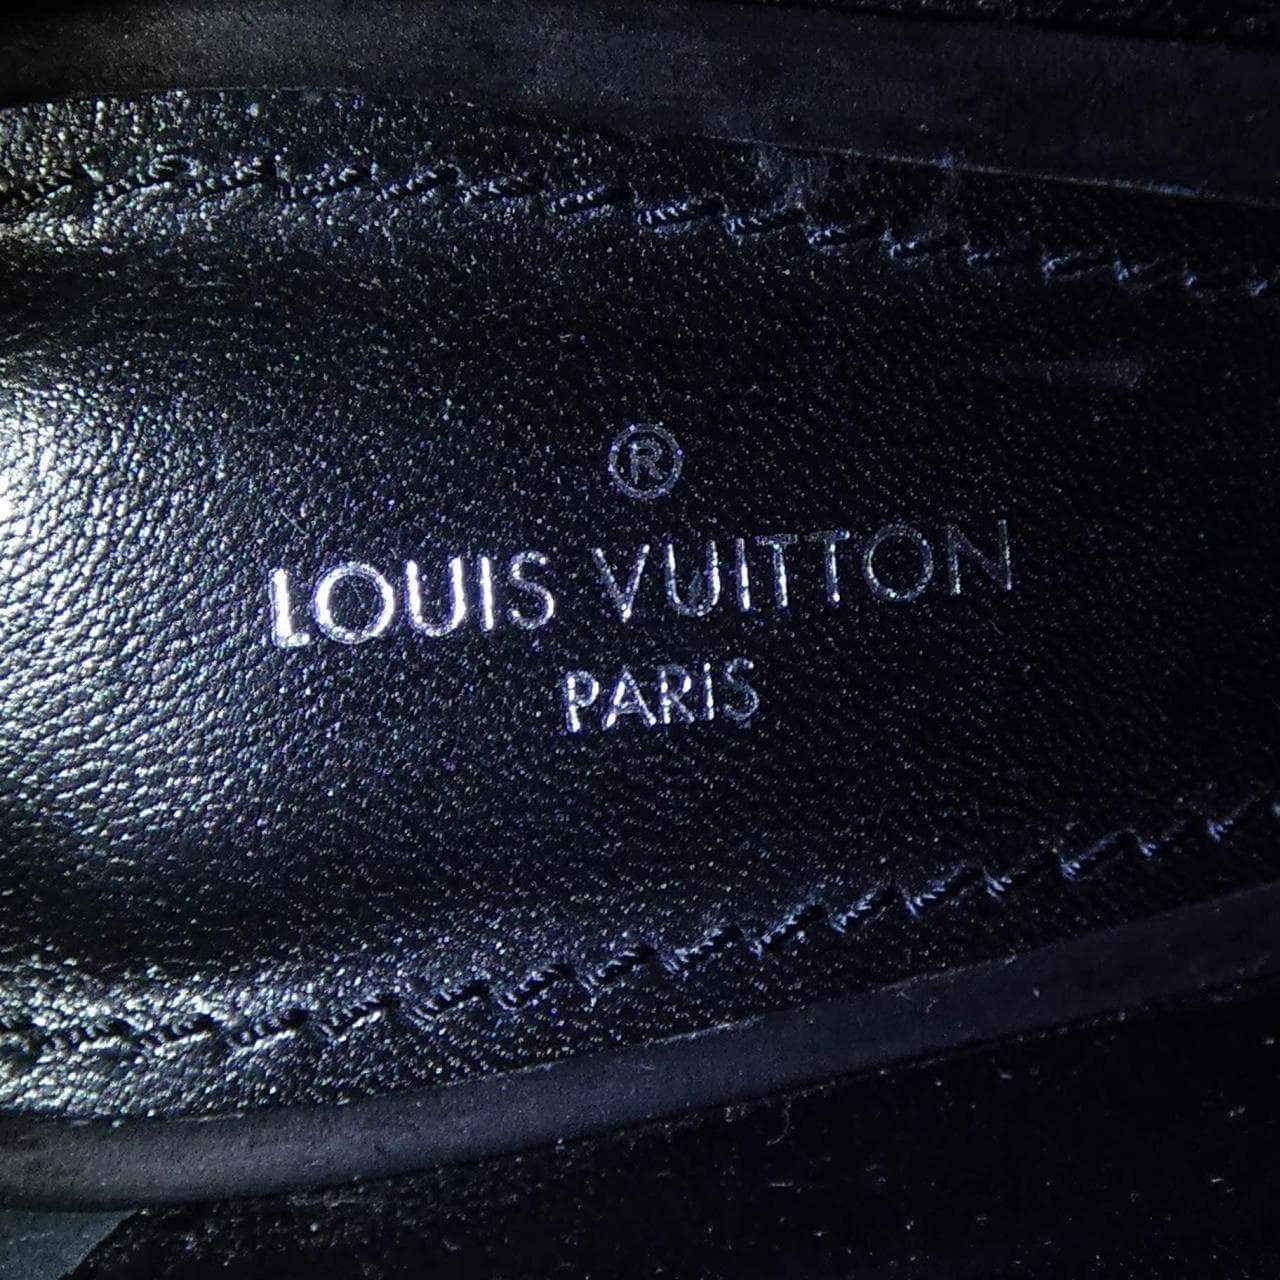 LOUIS LOUIS VUITTON boots